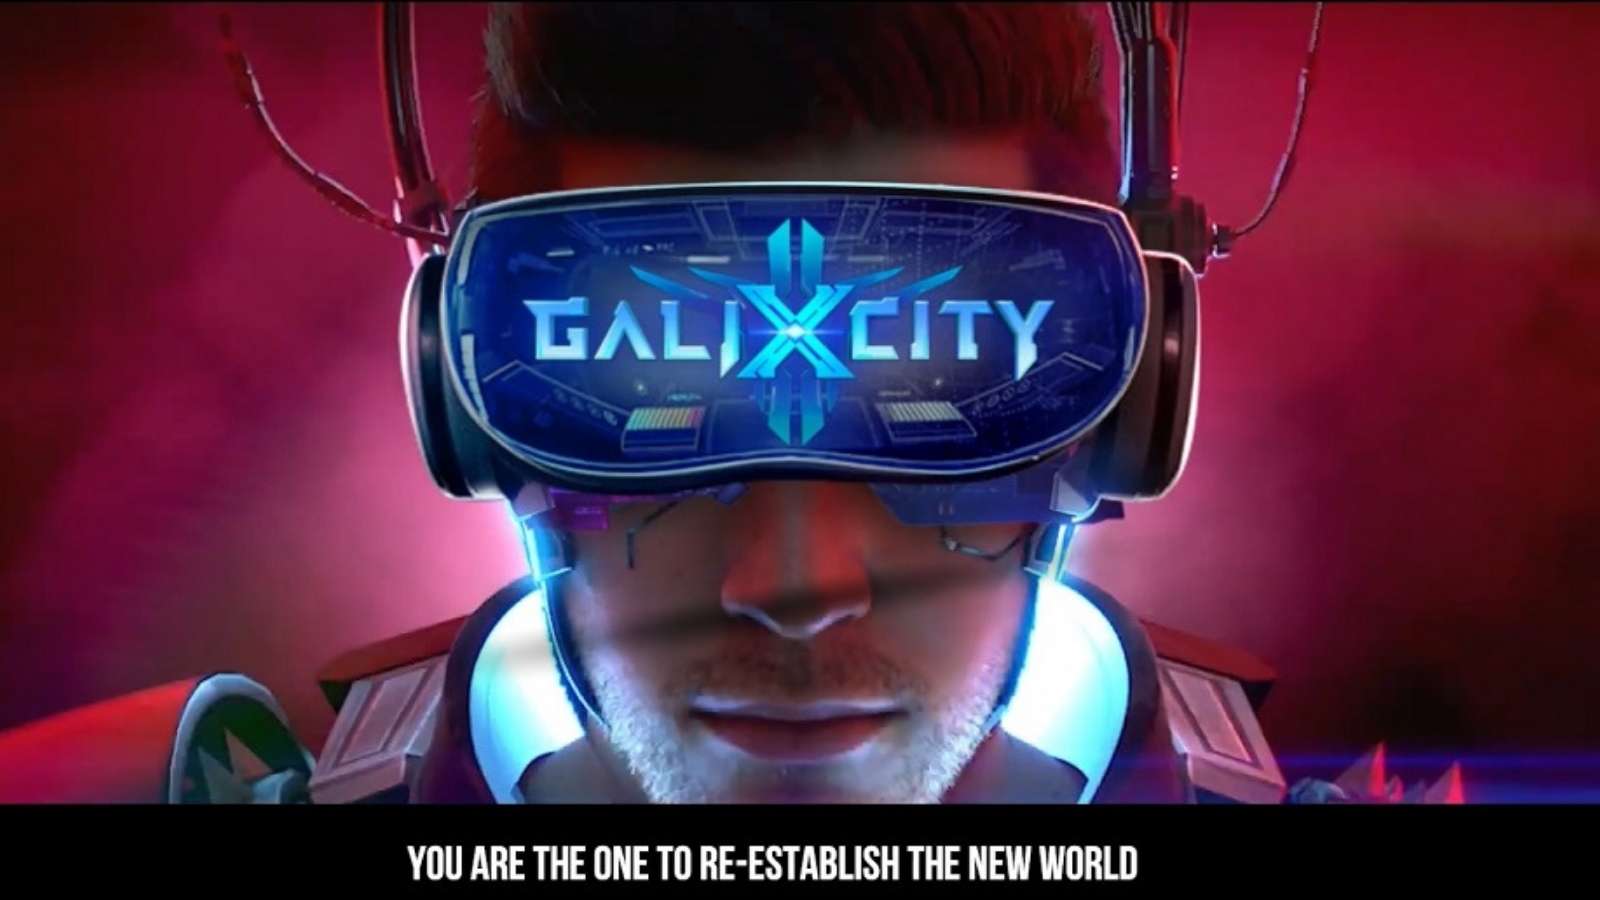 Công Nghệ VR-AR sẽ xuất hiện trong GaliXCity?